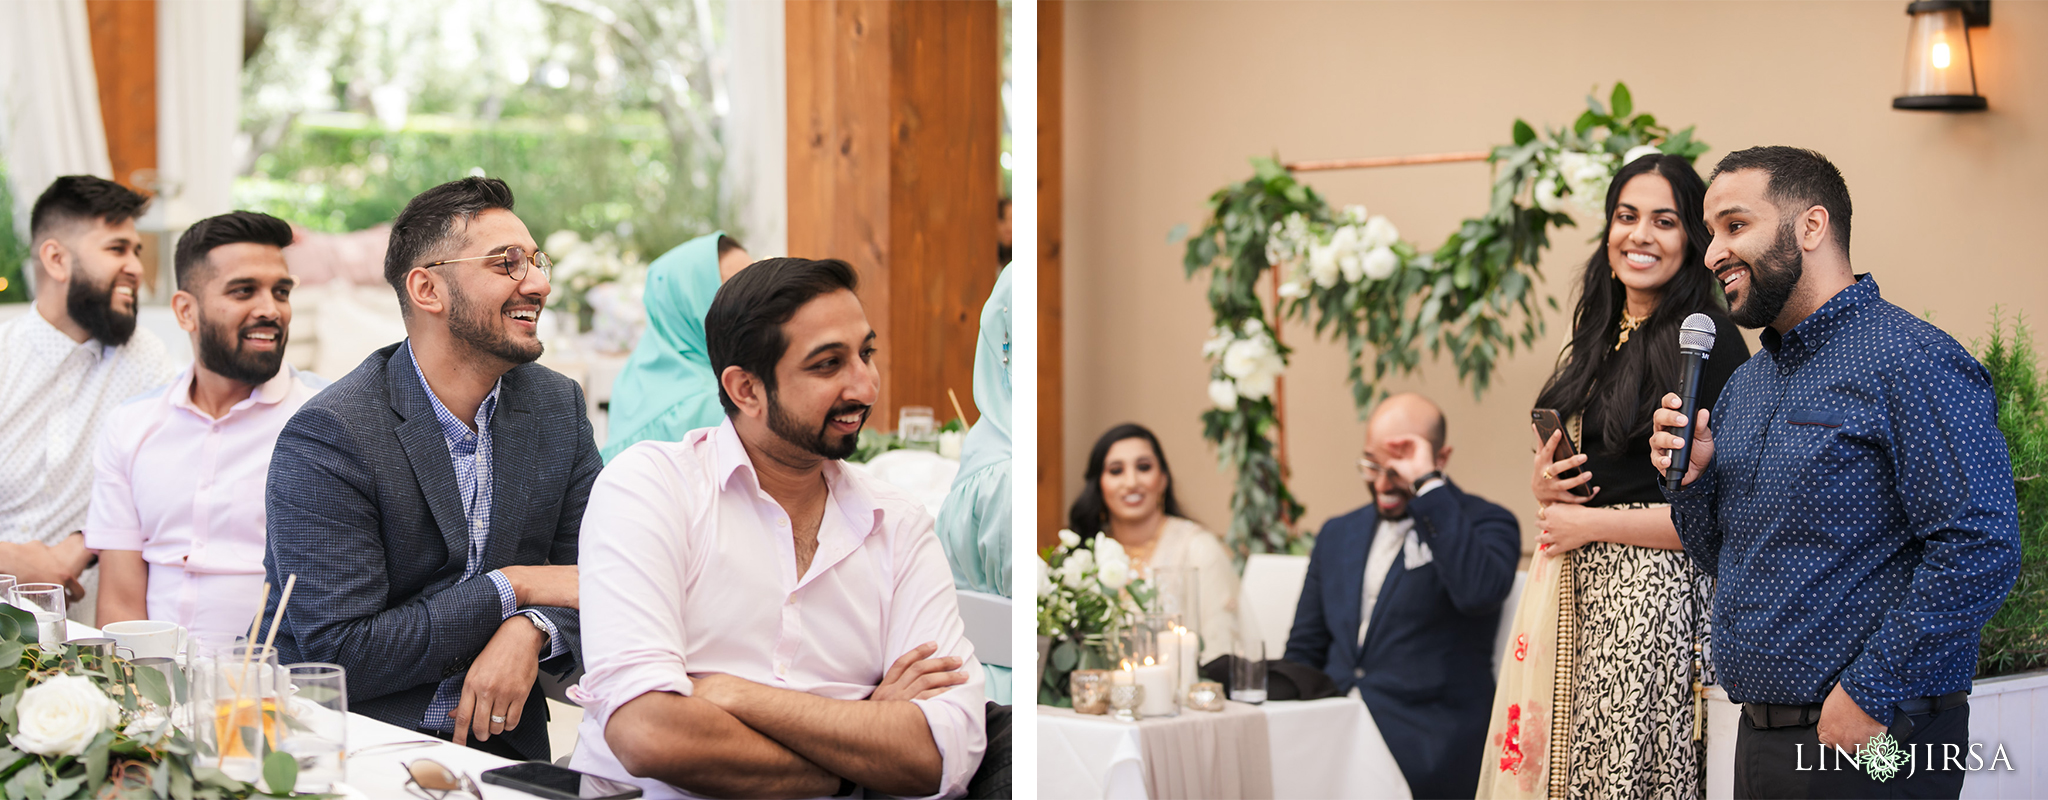 17 Fig and Olive Newport Beach Muslim Wedding Reception